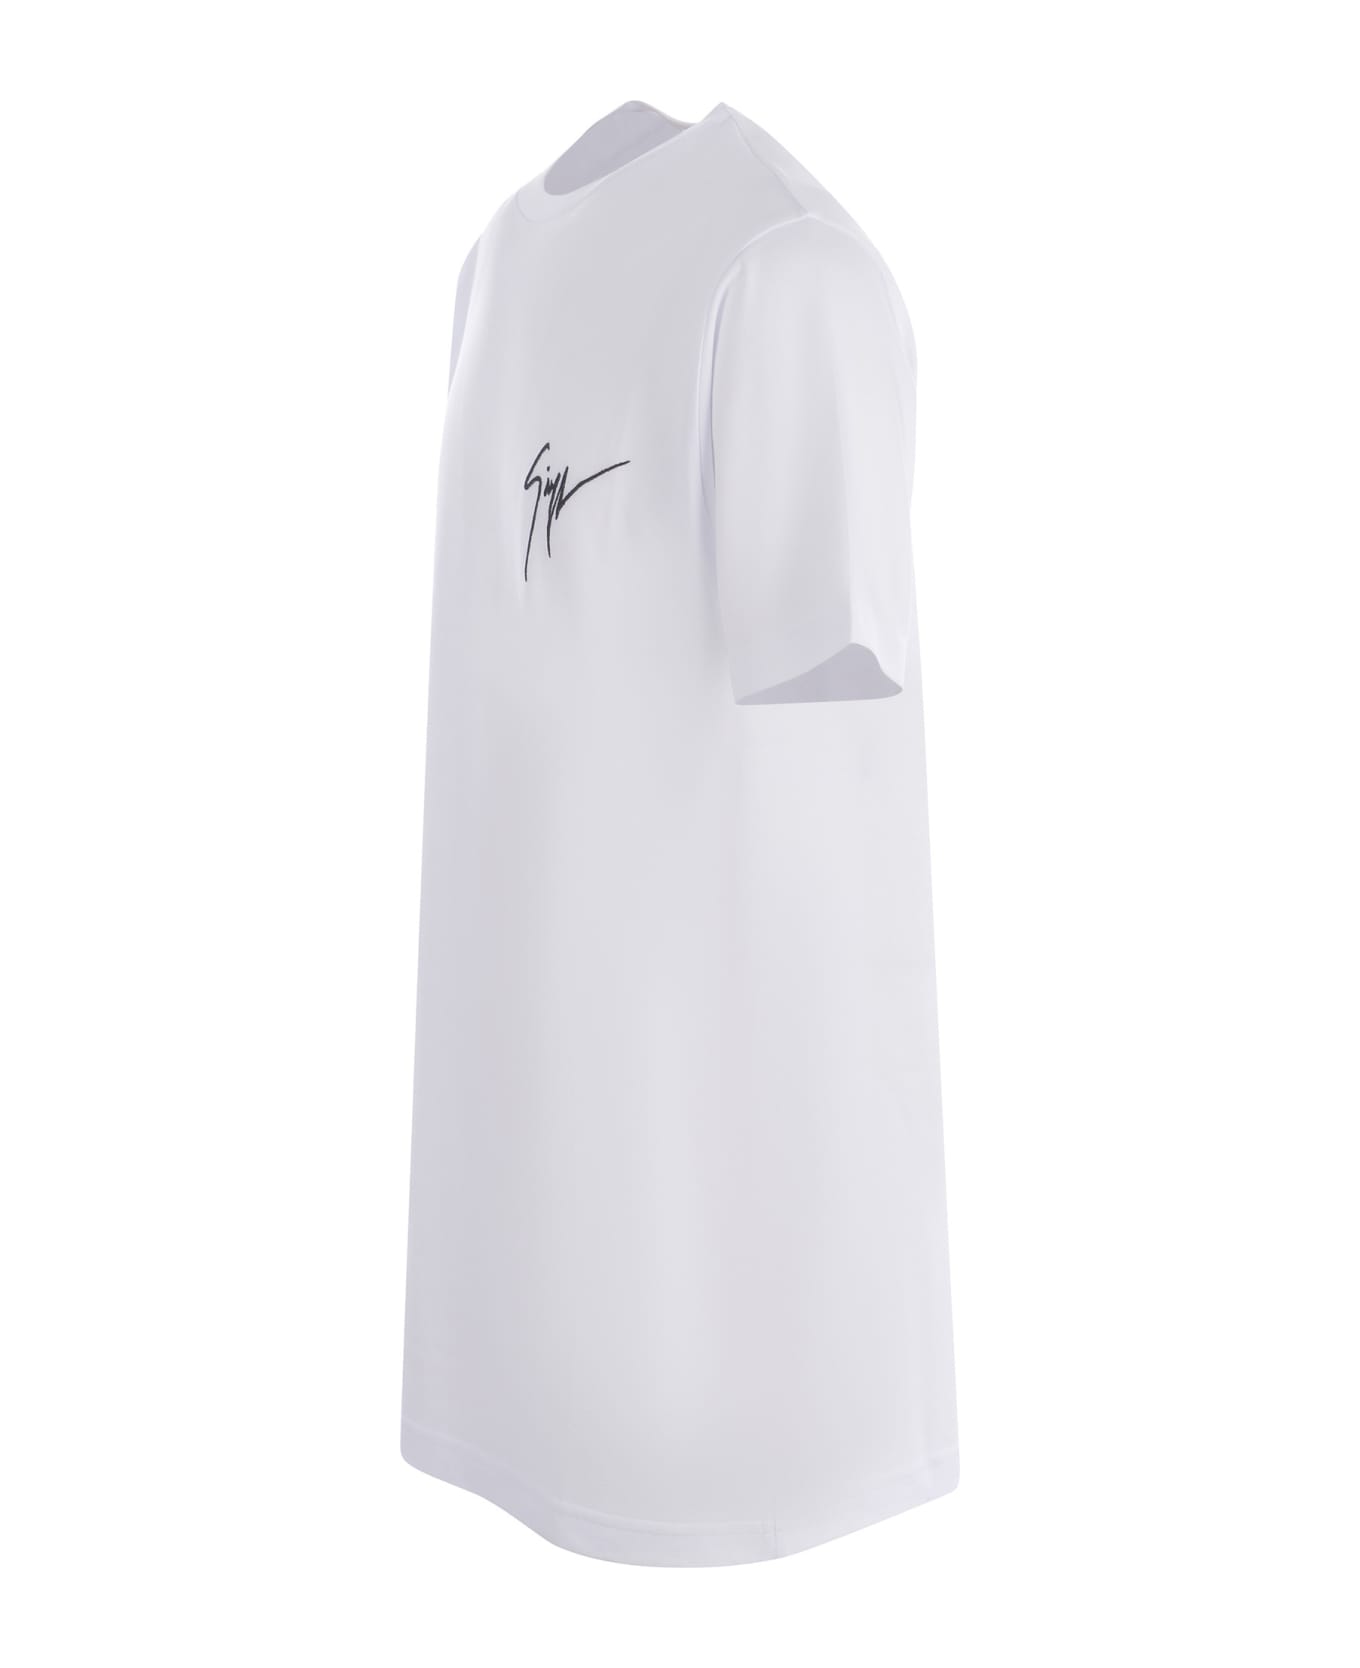 Giuseppe Zanotti T-shirt Giuseppe Zanotti Made Of Cotton - Bianco シャツ